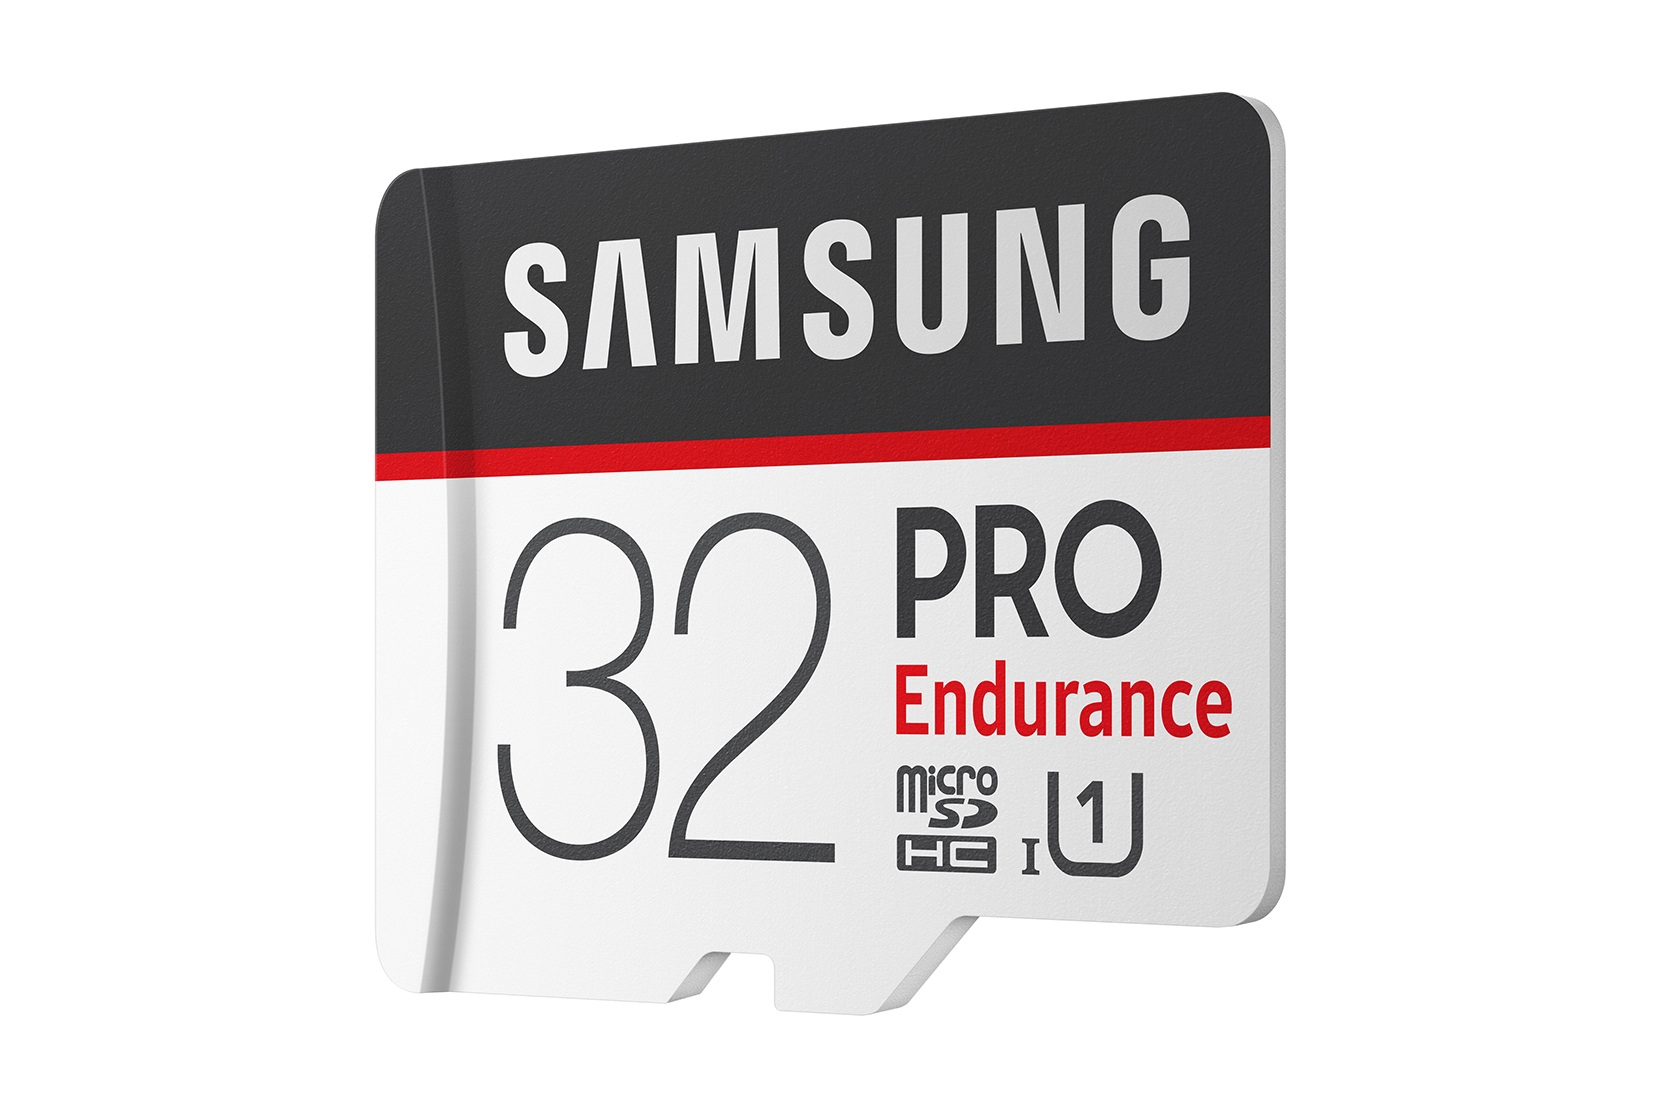 Samsung PRO Endurance - Micro SDHC 32Go V30 - Carte mémoire